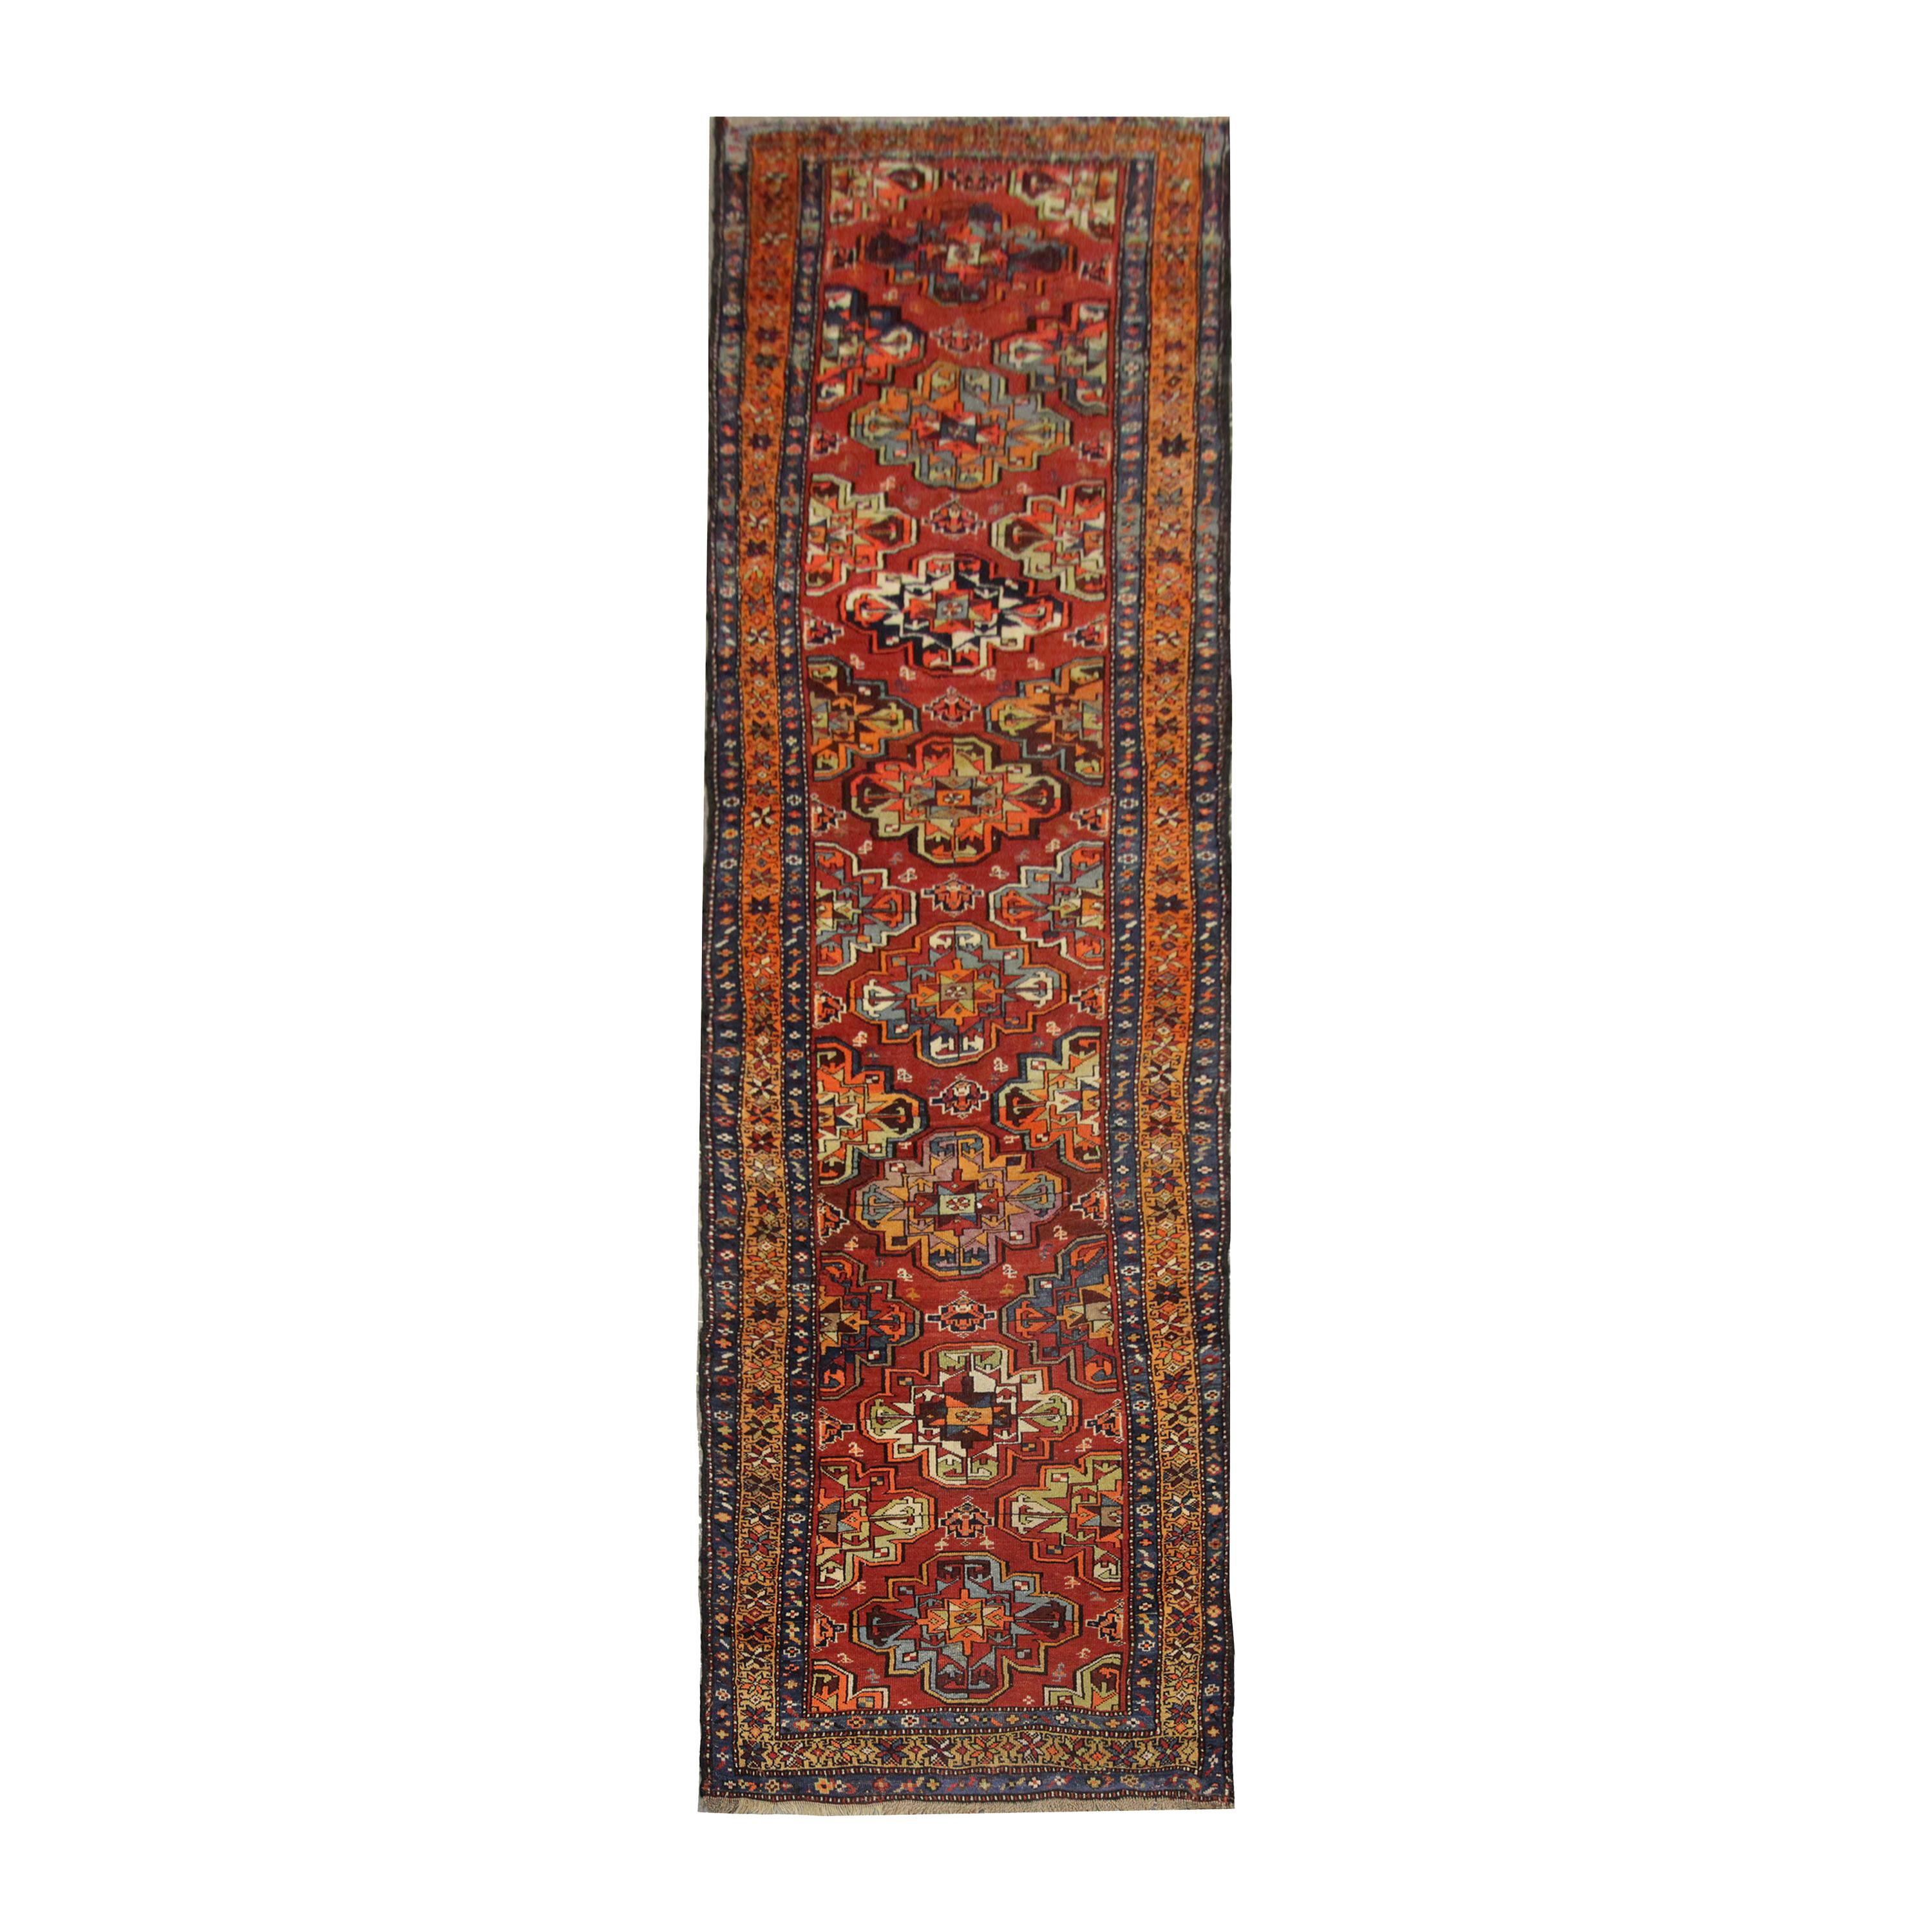 Antique Rug, Turkmen Oriental Runner, Caucasian Living Room Carpet Runner